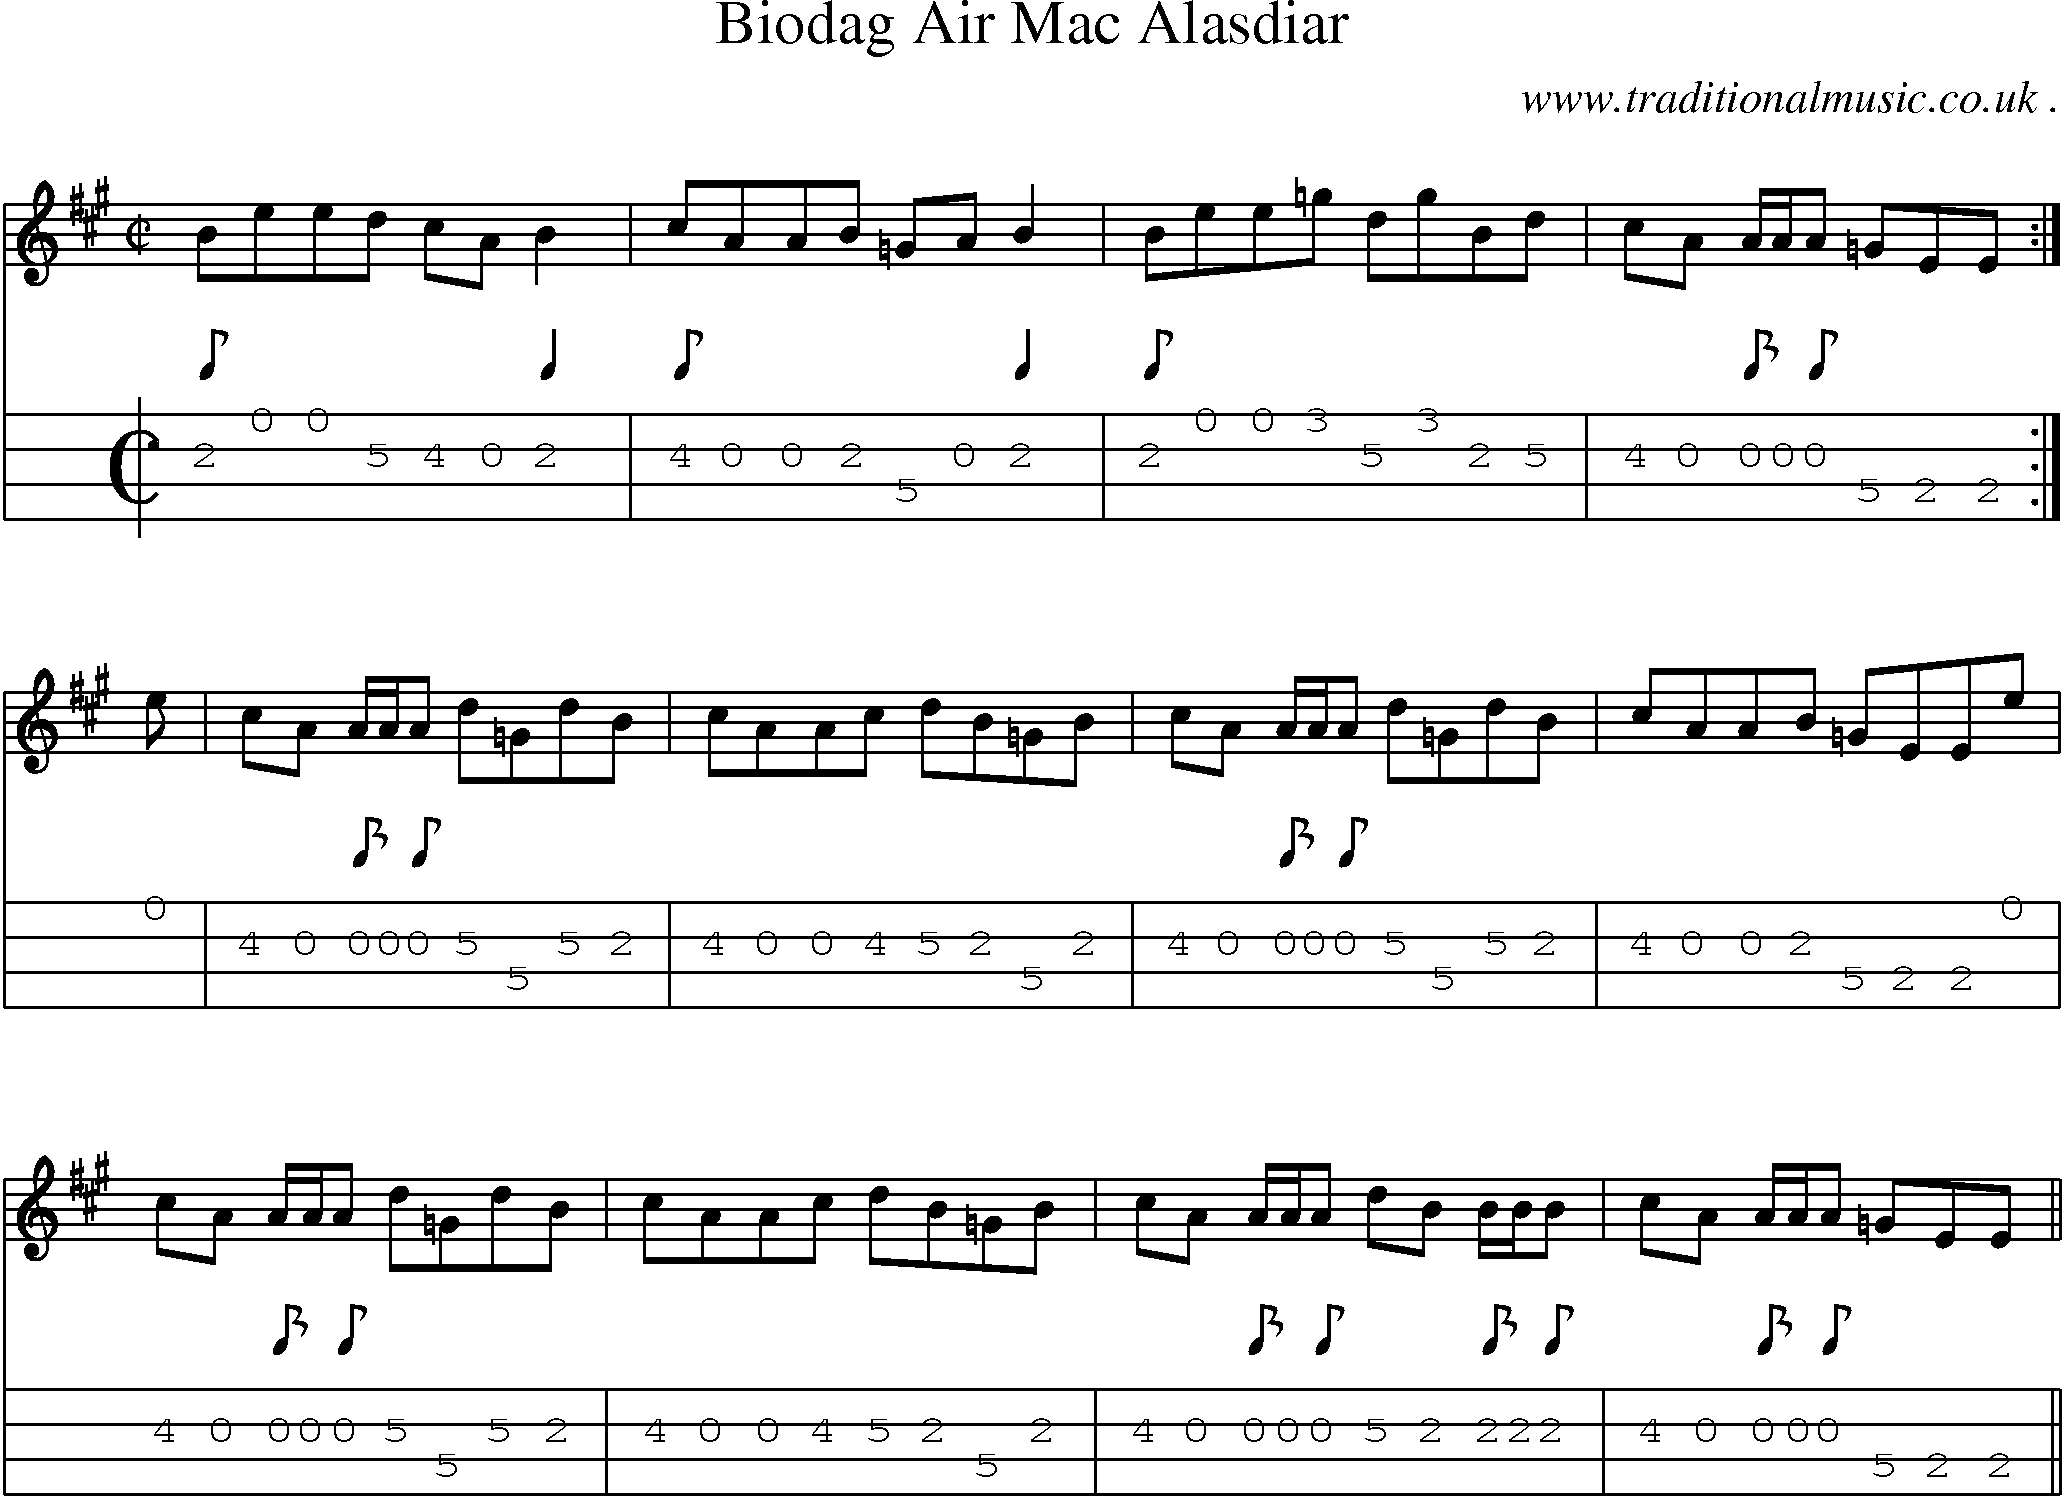 Sheet-music  score, Chords and Mandolin Tabs for Biodag Air Mac Alasdiar